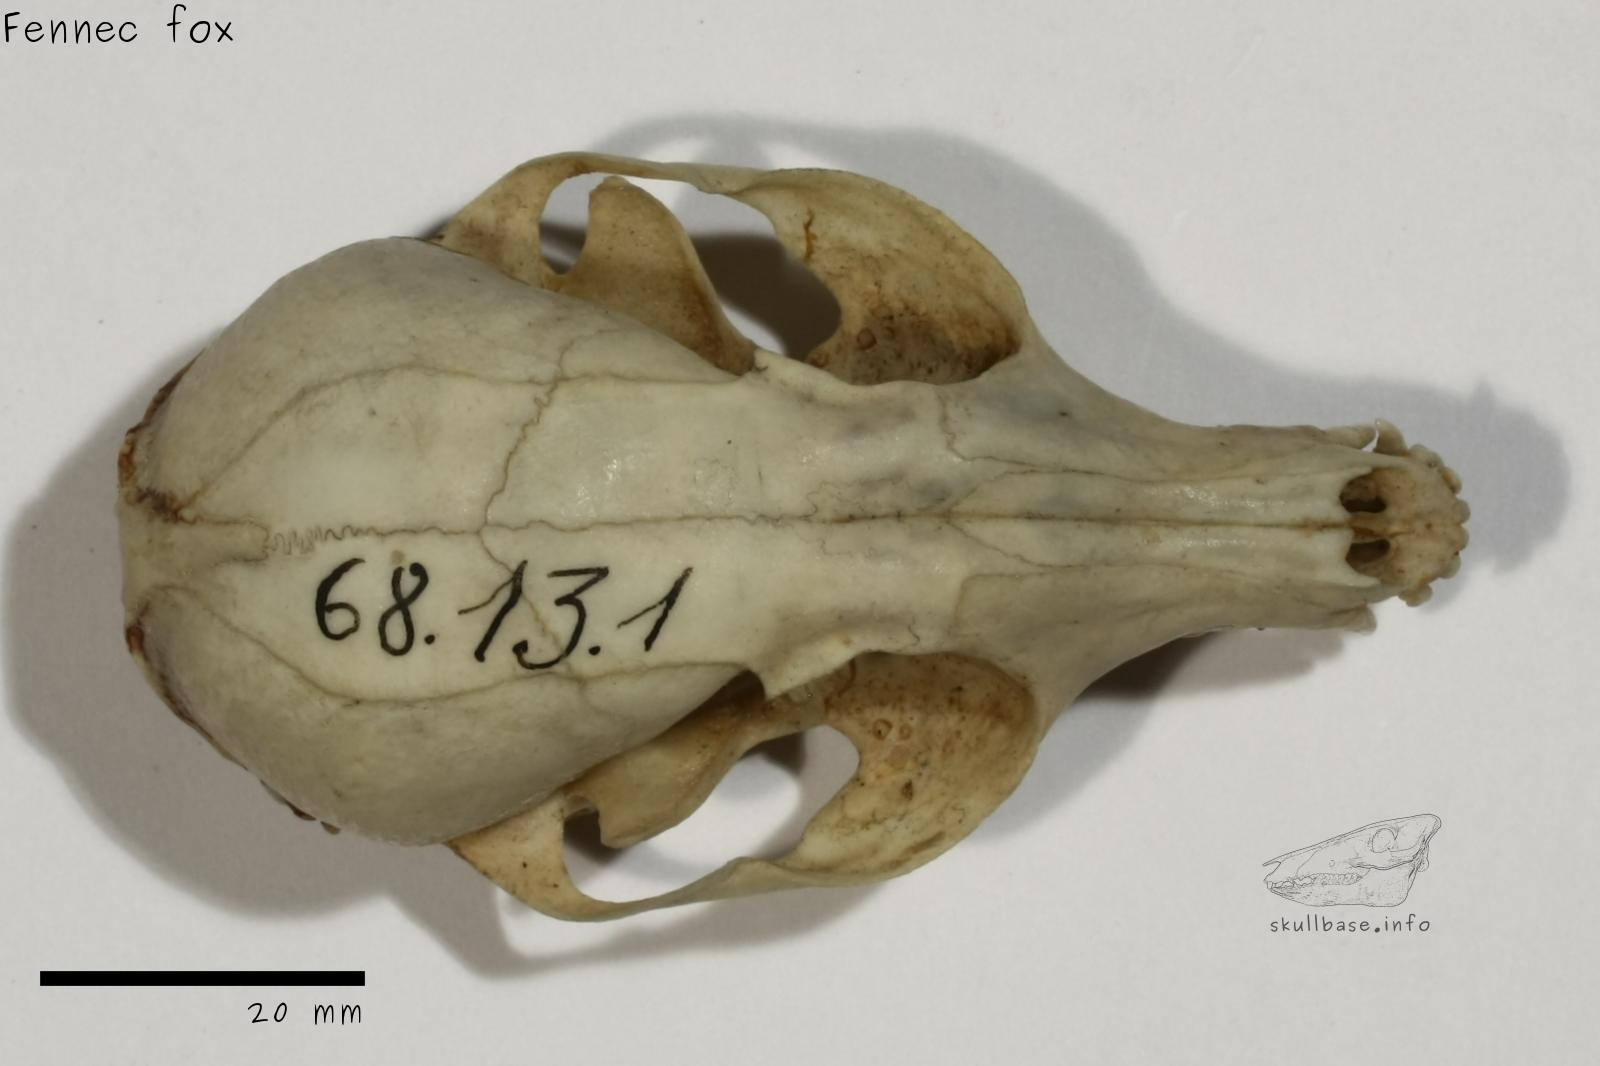 Fennec fox (Vulpes zerda) skull dorsal view